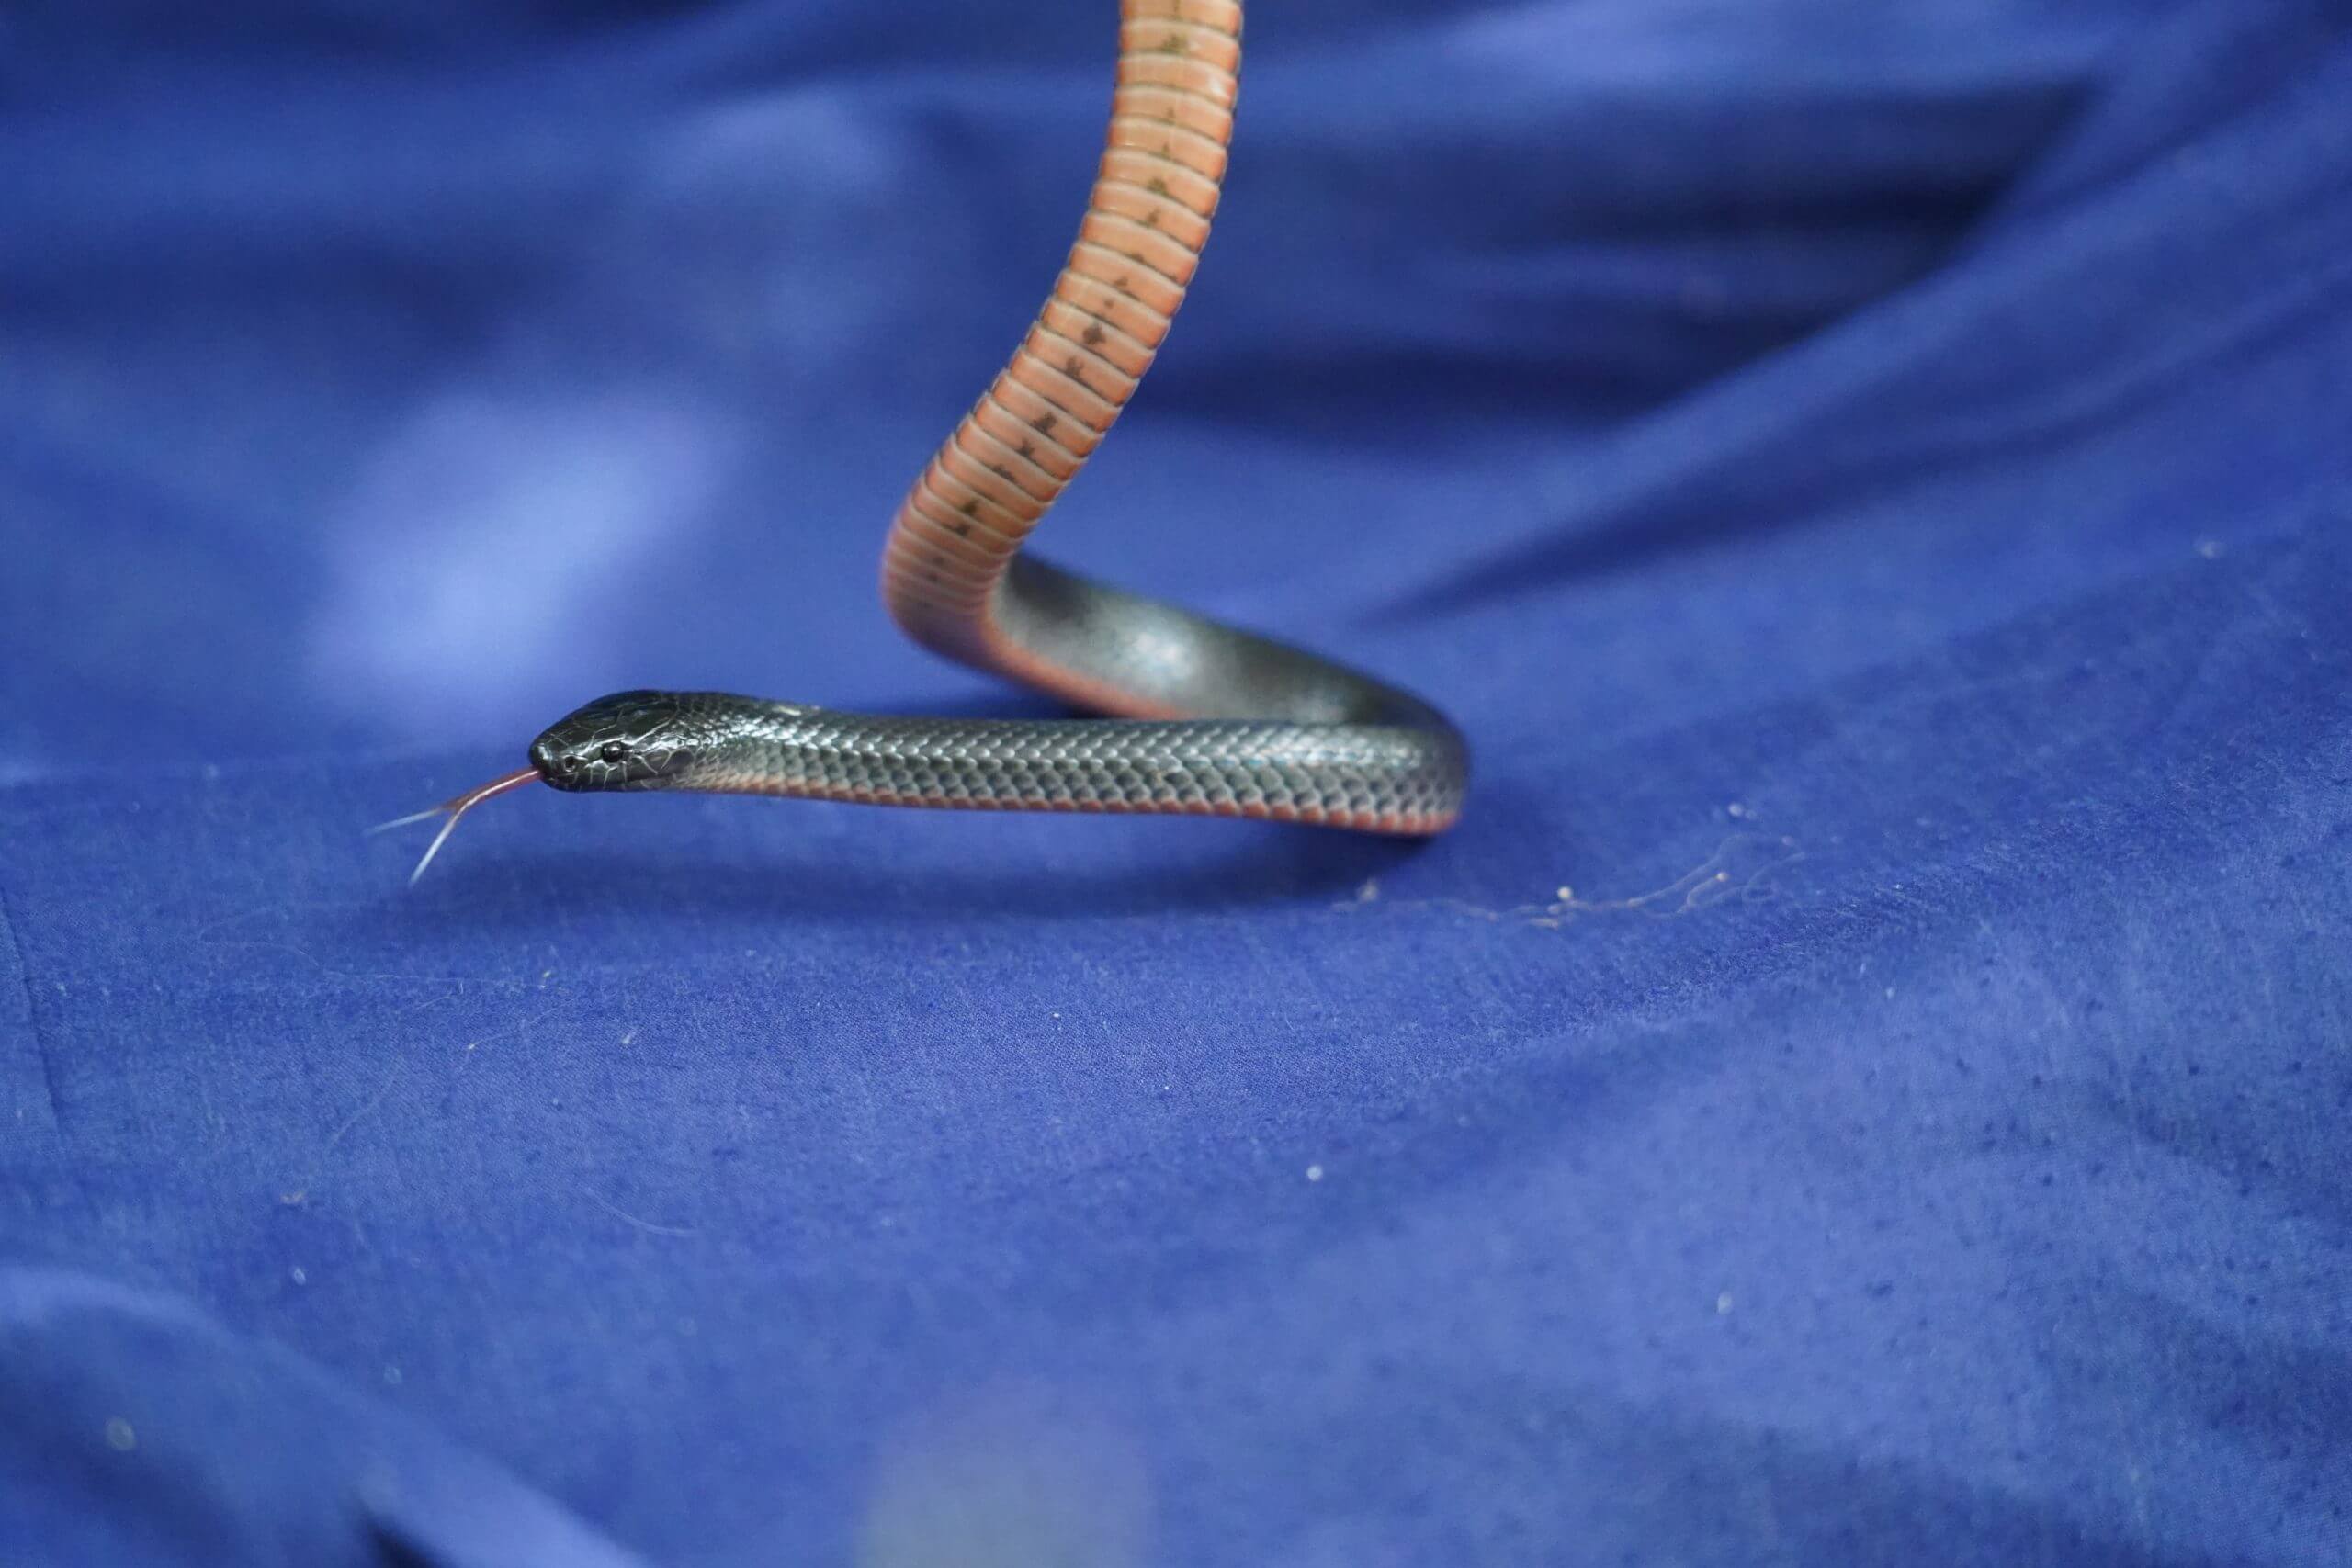 Eastern Small Eyed Snake on Snake Sack